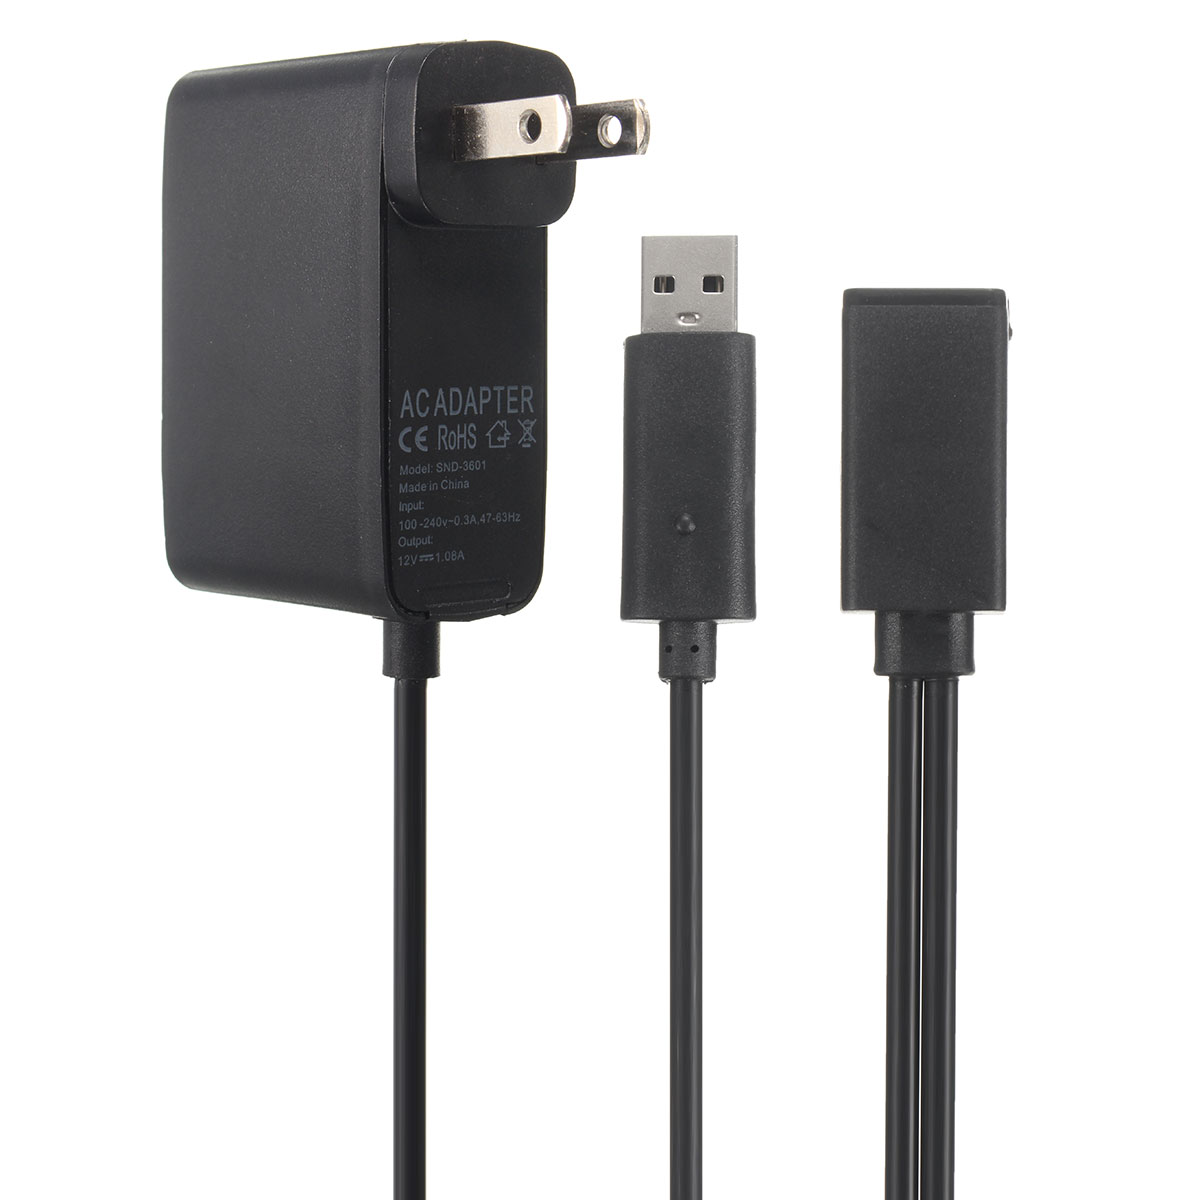 2.3m USB AC Adapter Power Supply Cable for Xbox 360 Kinect Sensor EU/US Plug 22